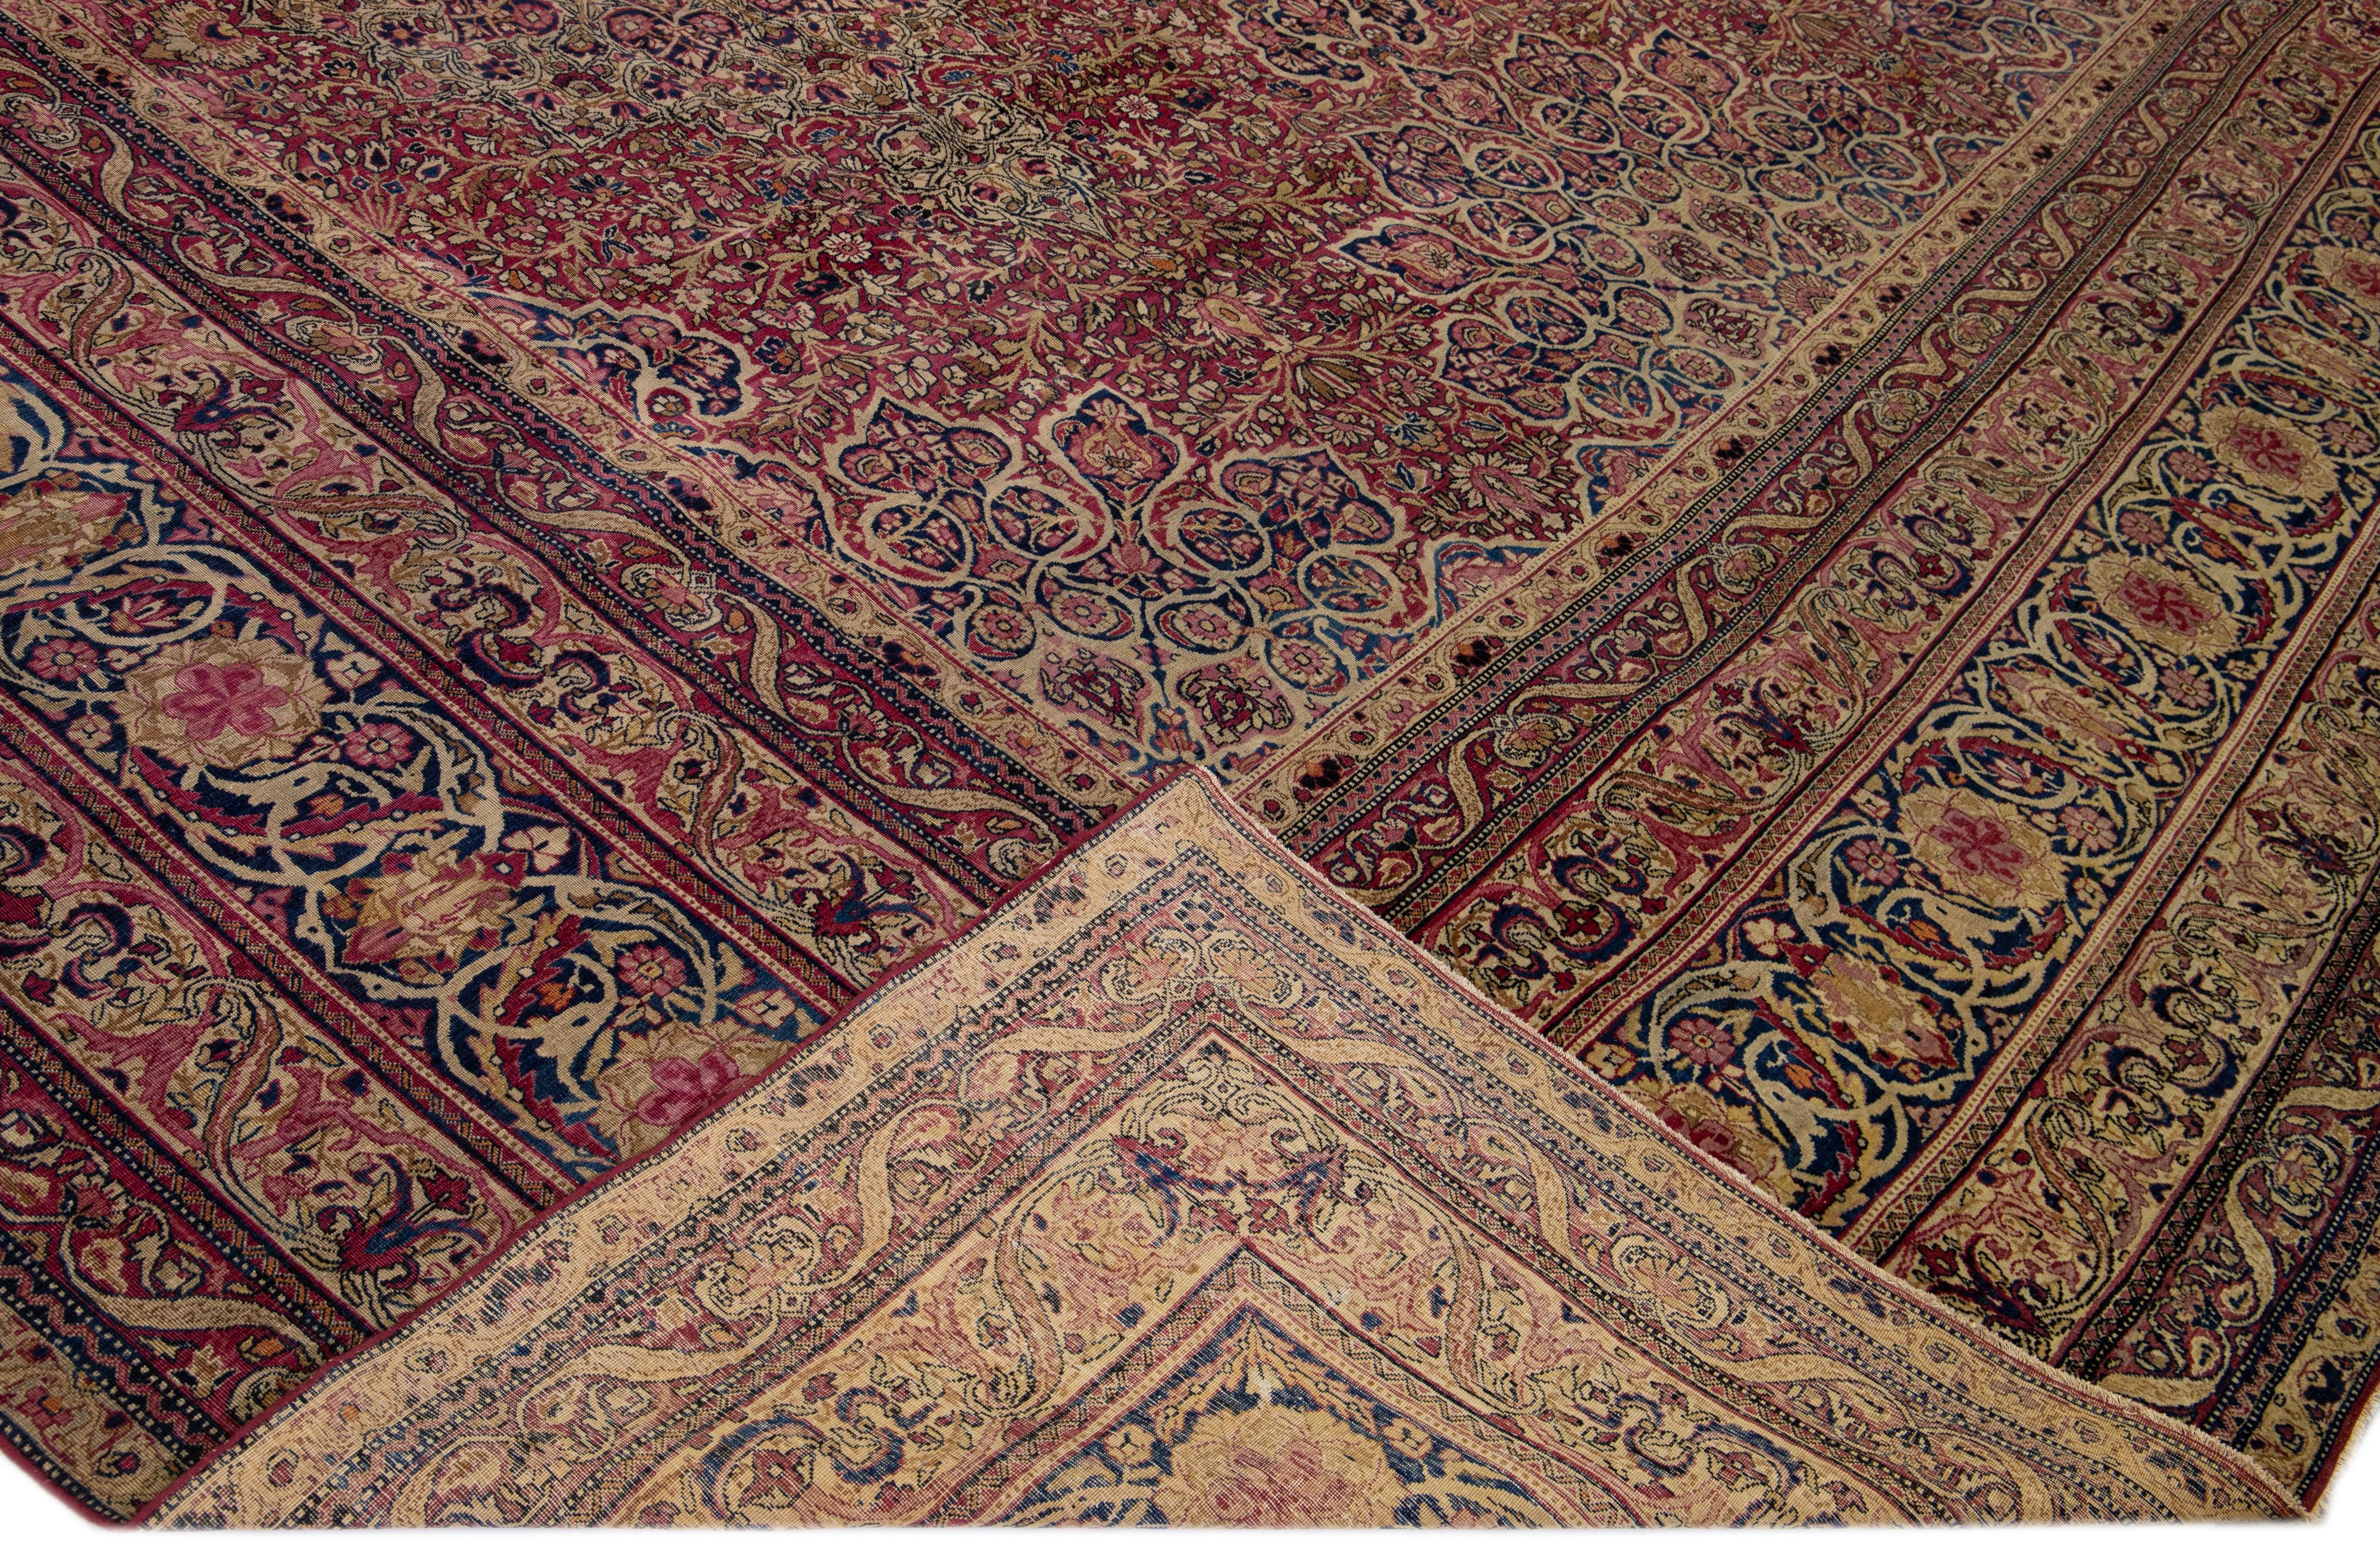 Schöner antiker handgeknüpfter Wollteppich aus Kerman mit rotem Feld. Dieser Perserteppich hat mehrfarbige Akzente in einem prächtigen Allover-Rosettenmuster.

Dieser Teppich misst: 14' x 23'5